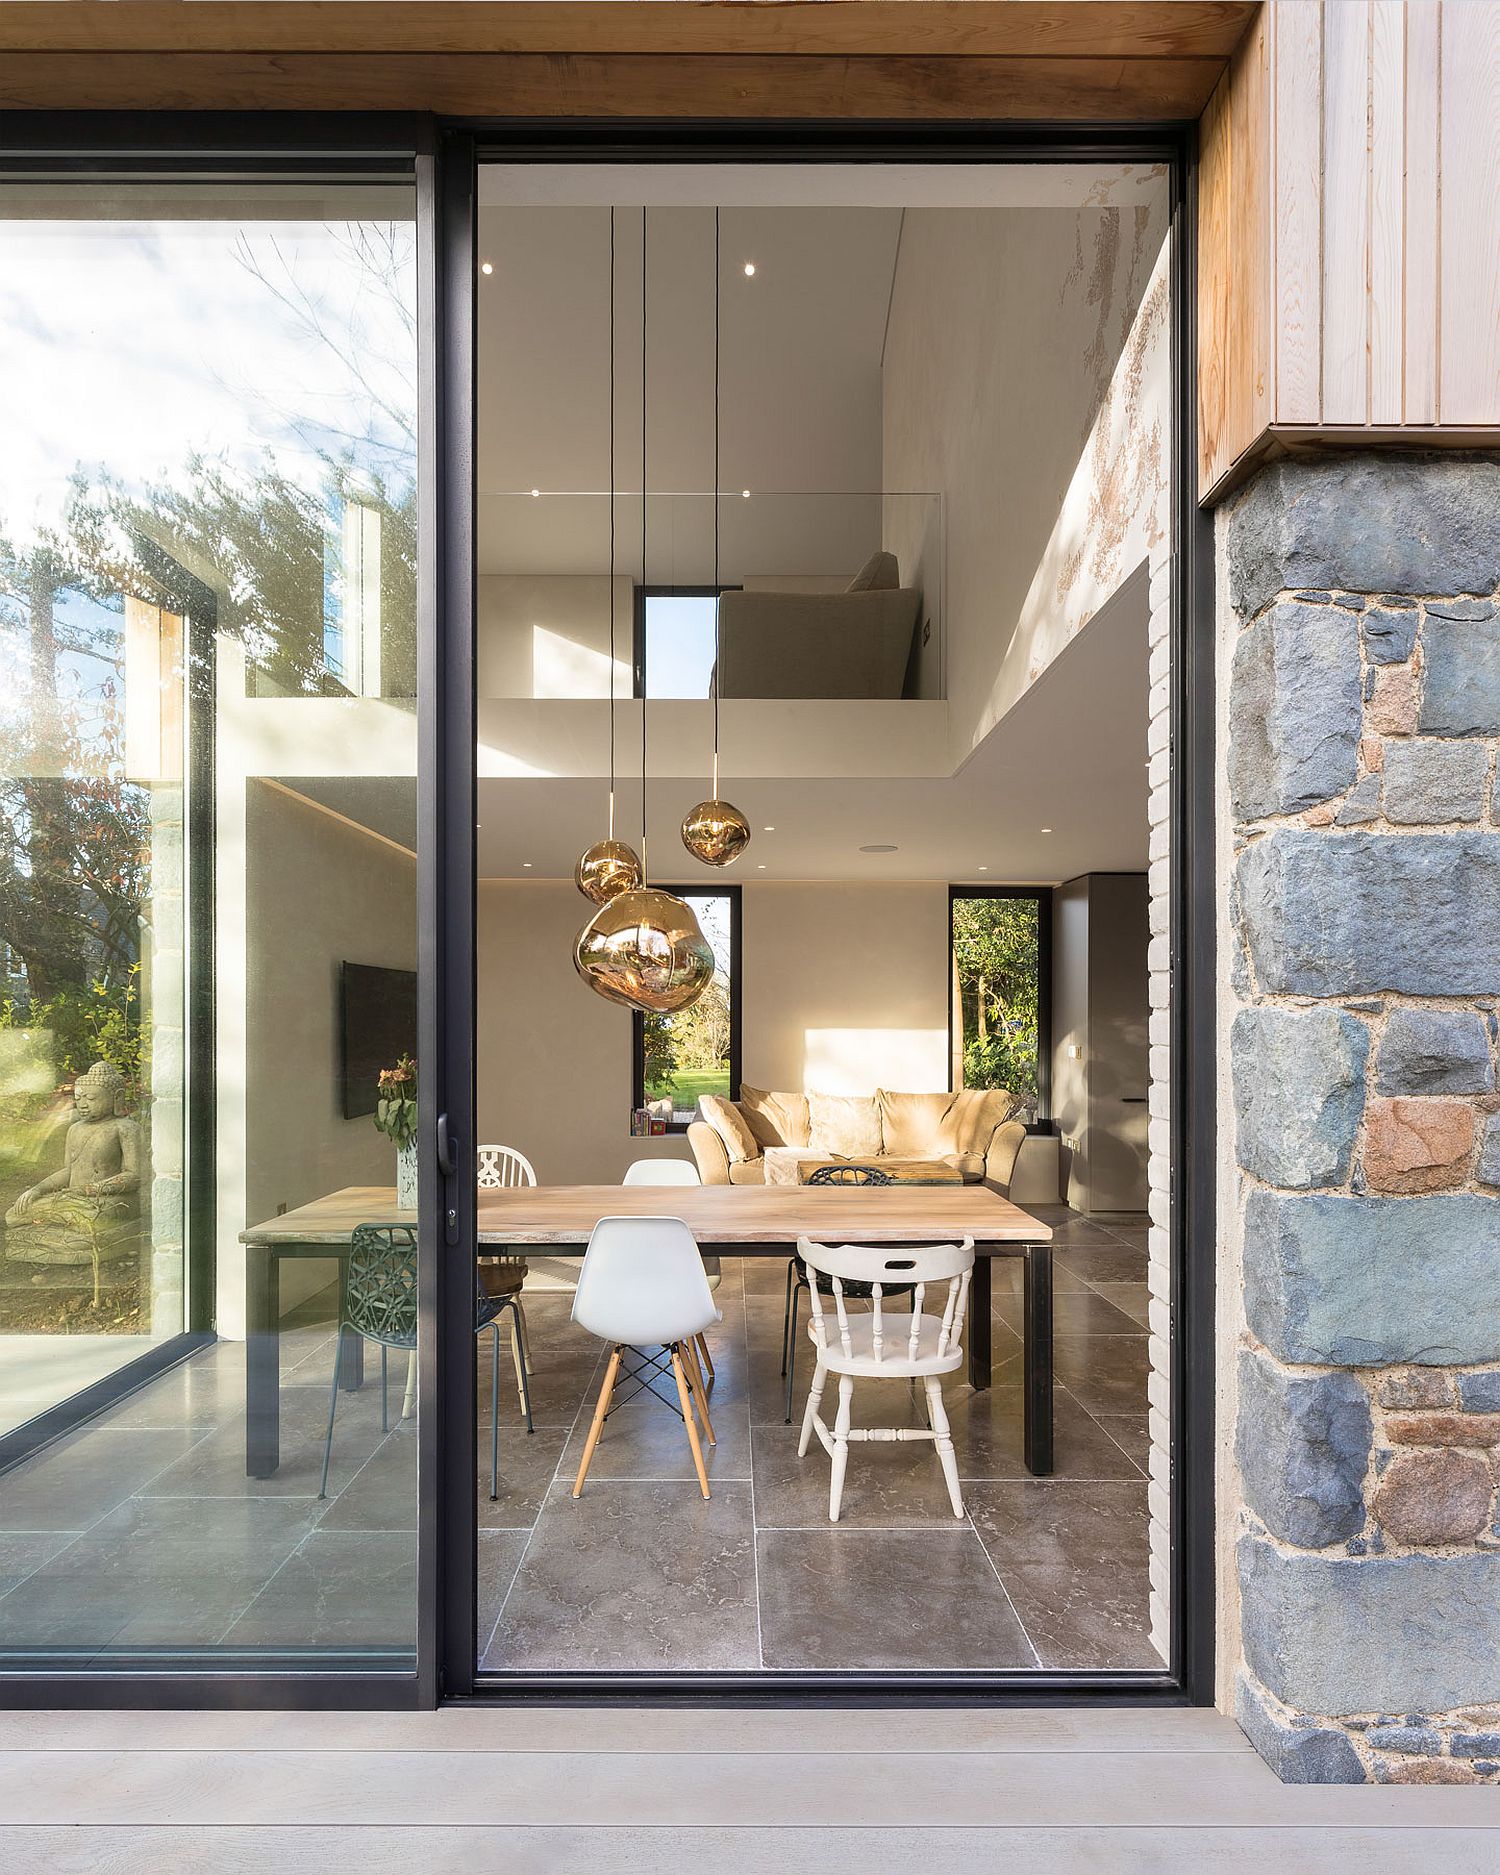 Sliding-glass-doors-create-an-easy-indoor-outdoor-interplay